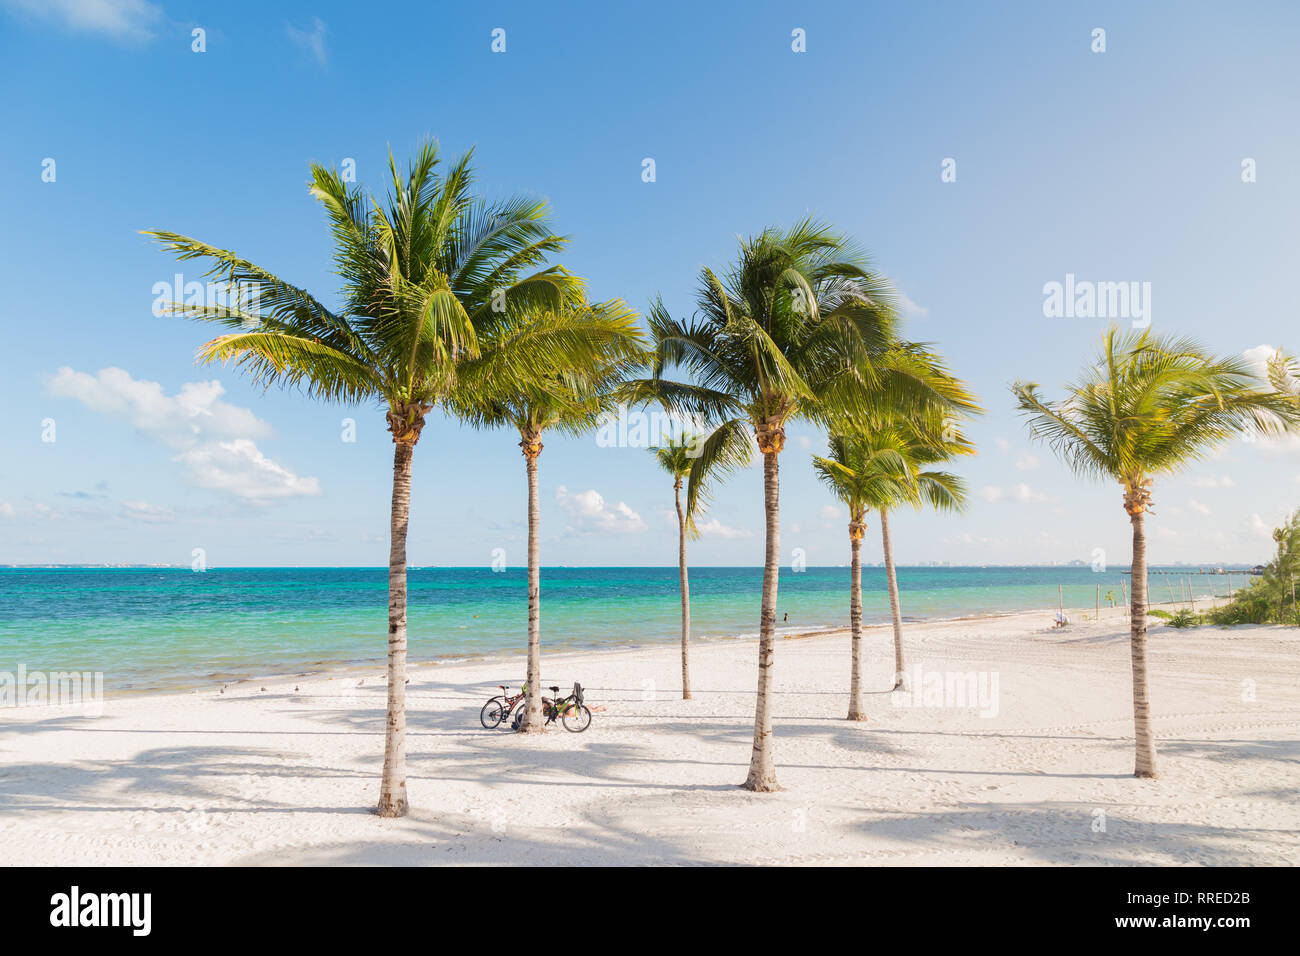 Plage de sable blanc de Cancun, au Mexique, avec des palmiers avec bicyles appuyé contre eux. Banque D'Images